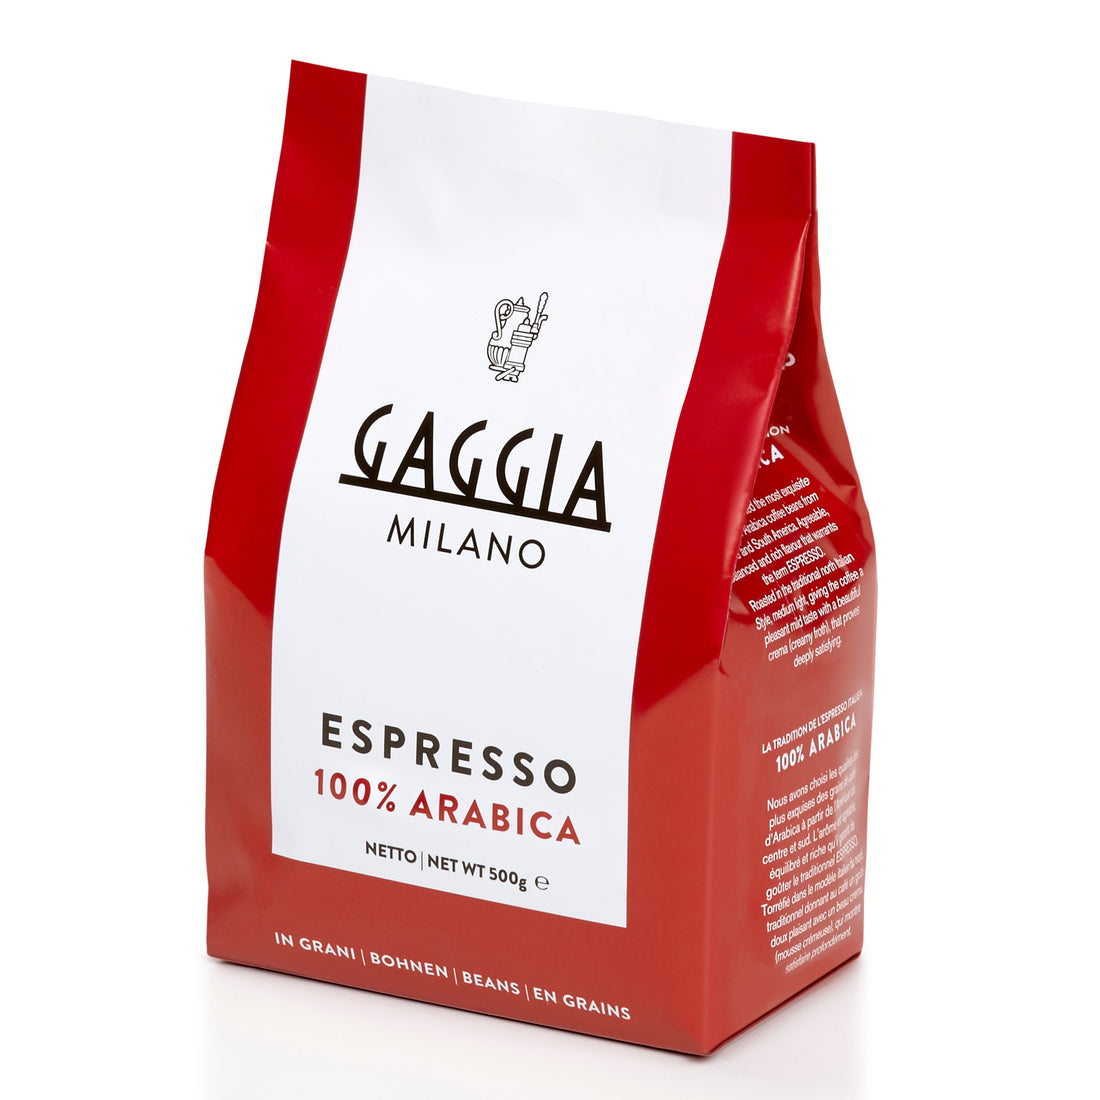 Gaggia 100% Arabica Whole Bean Espresso - 1.1 lb